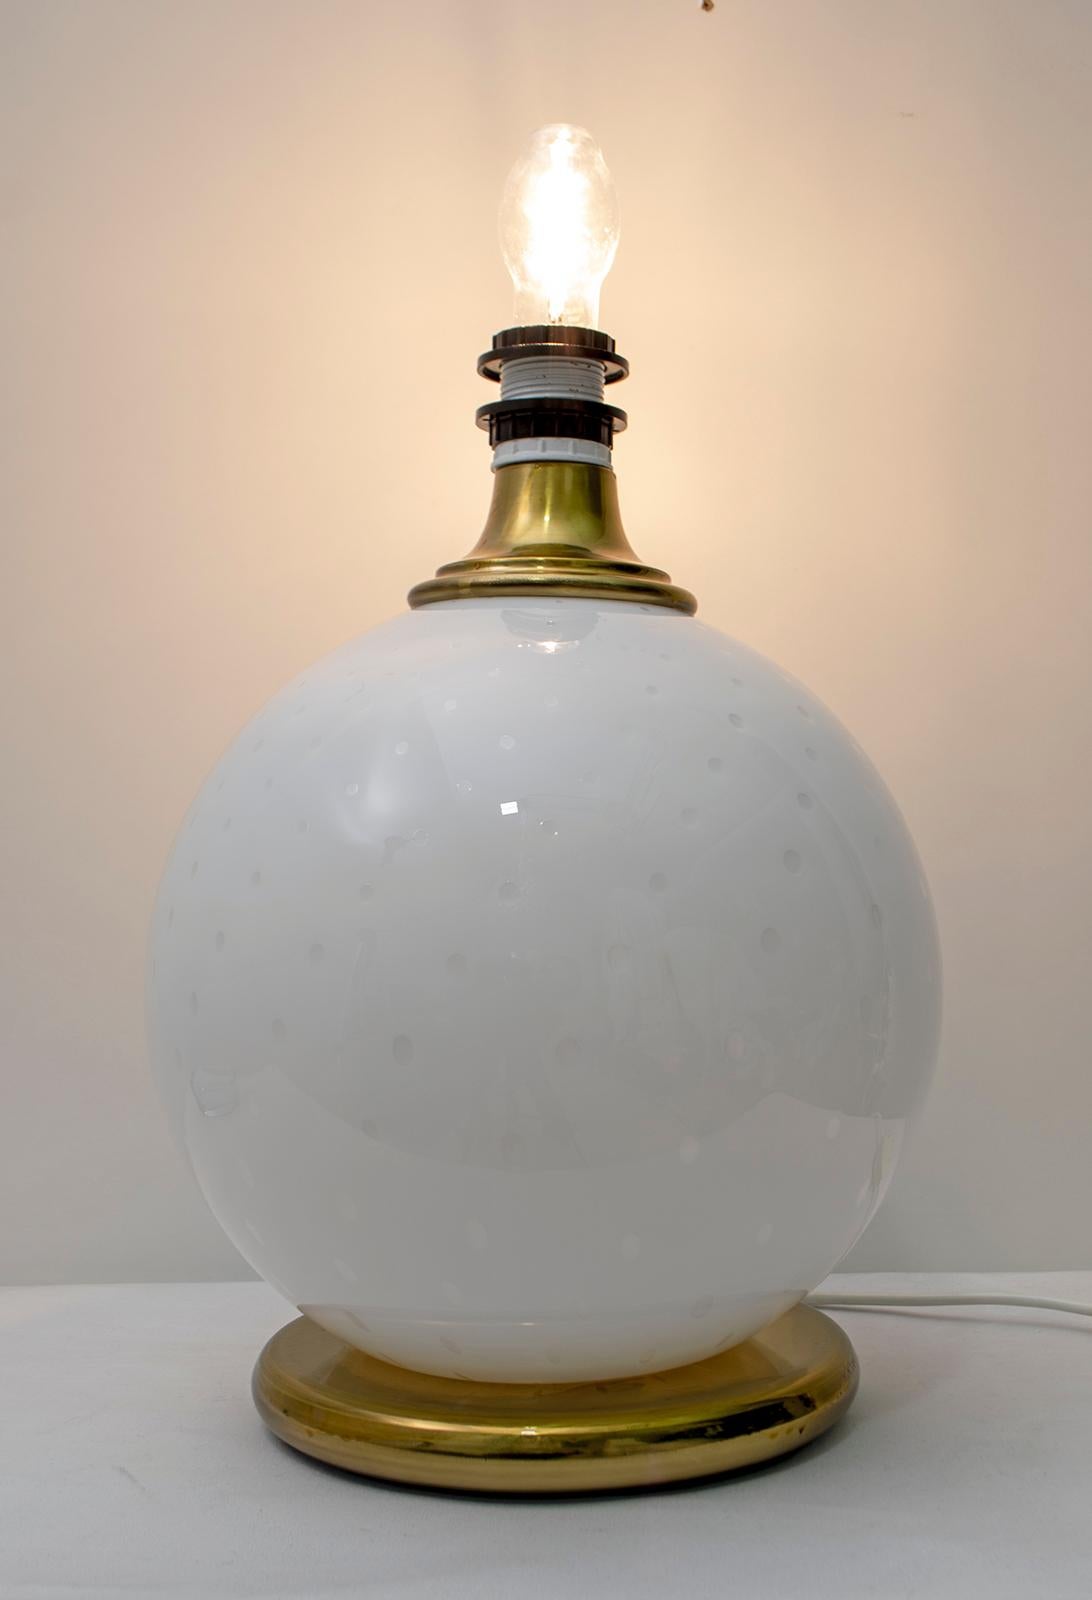 Cette lampe a été créée par Maestri Muranesi, avec la technique du verre soufflé avec des bulles d'air, les deux supports sont en laiton, il n'y a pas d'abat-jour (comme sur la photo). Italie des années 1970.
